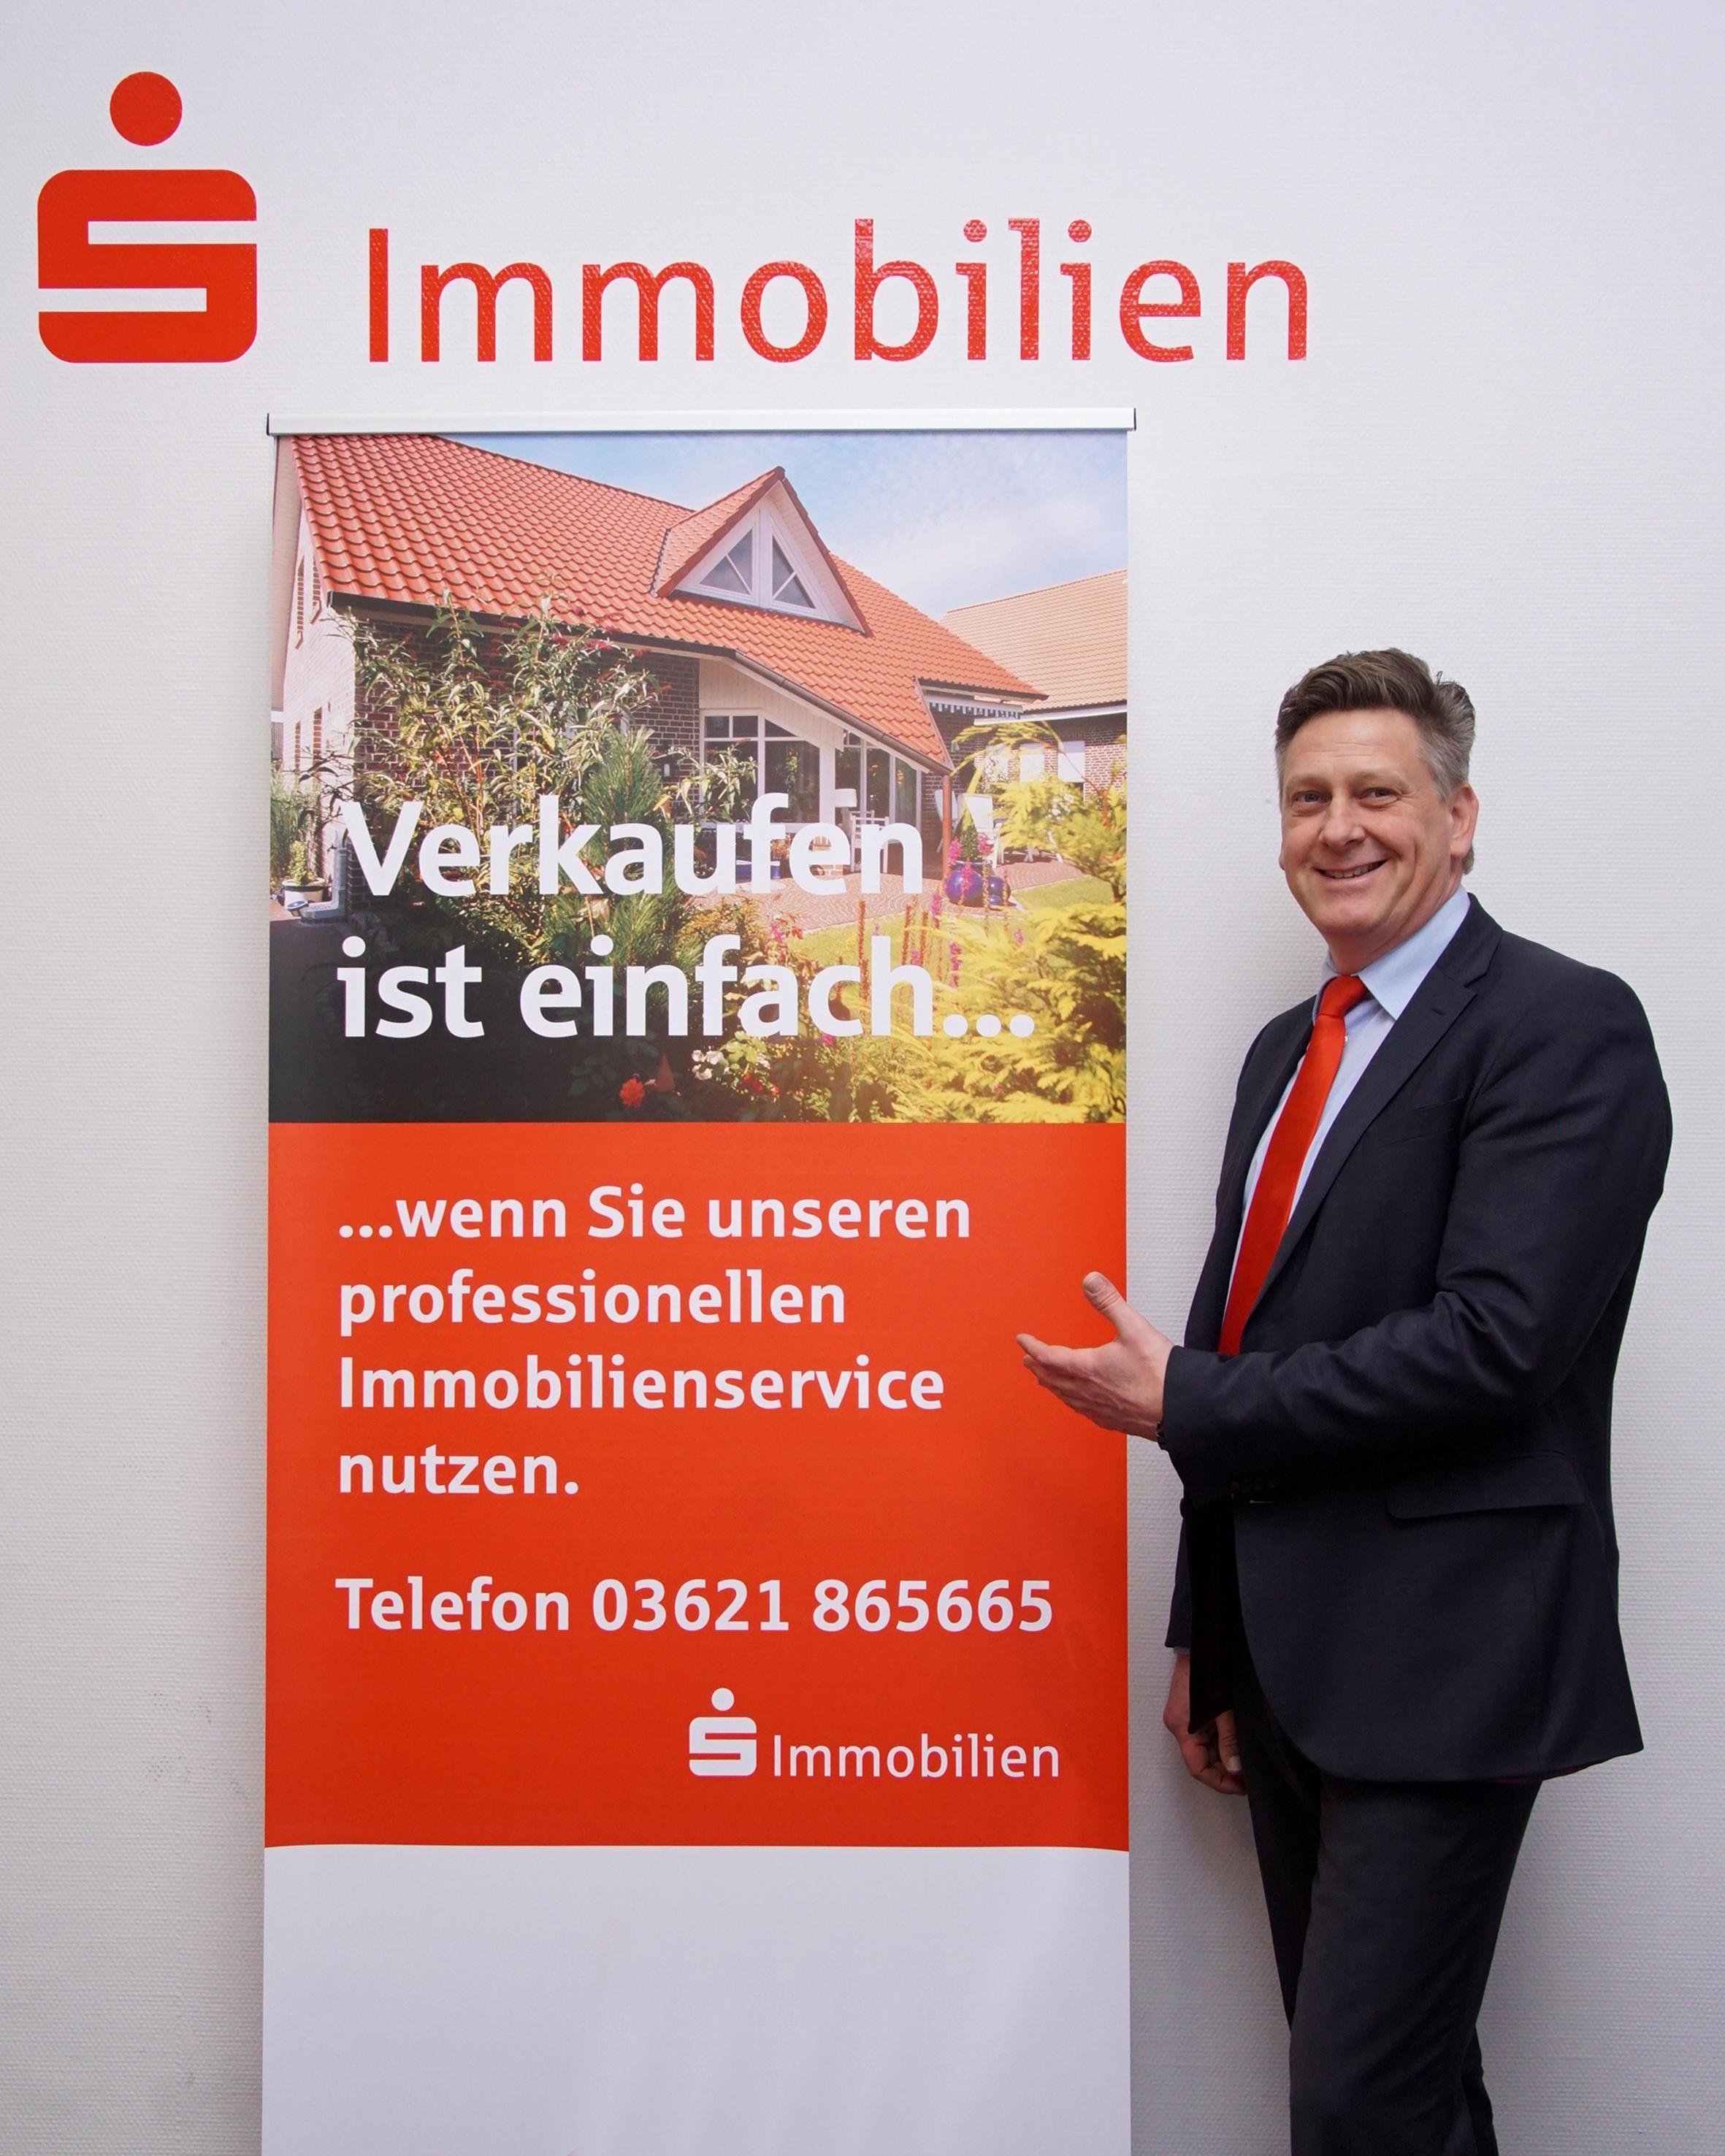 Bild der Sparkassen-Immobilien-Vermittlungs GmbH